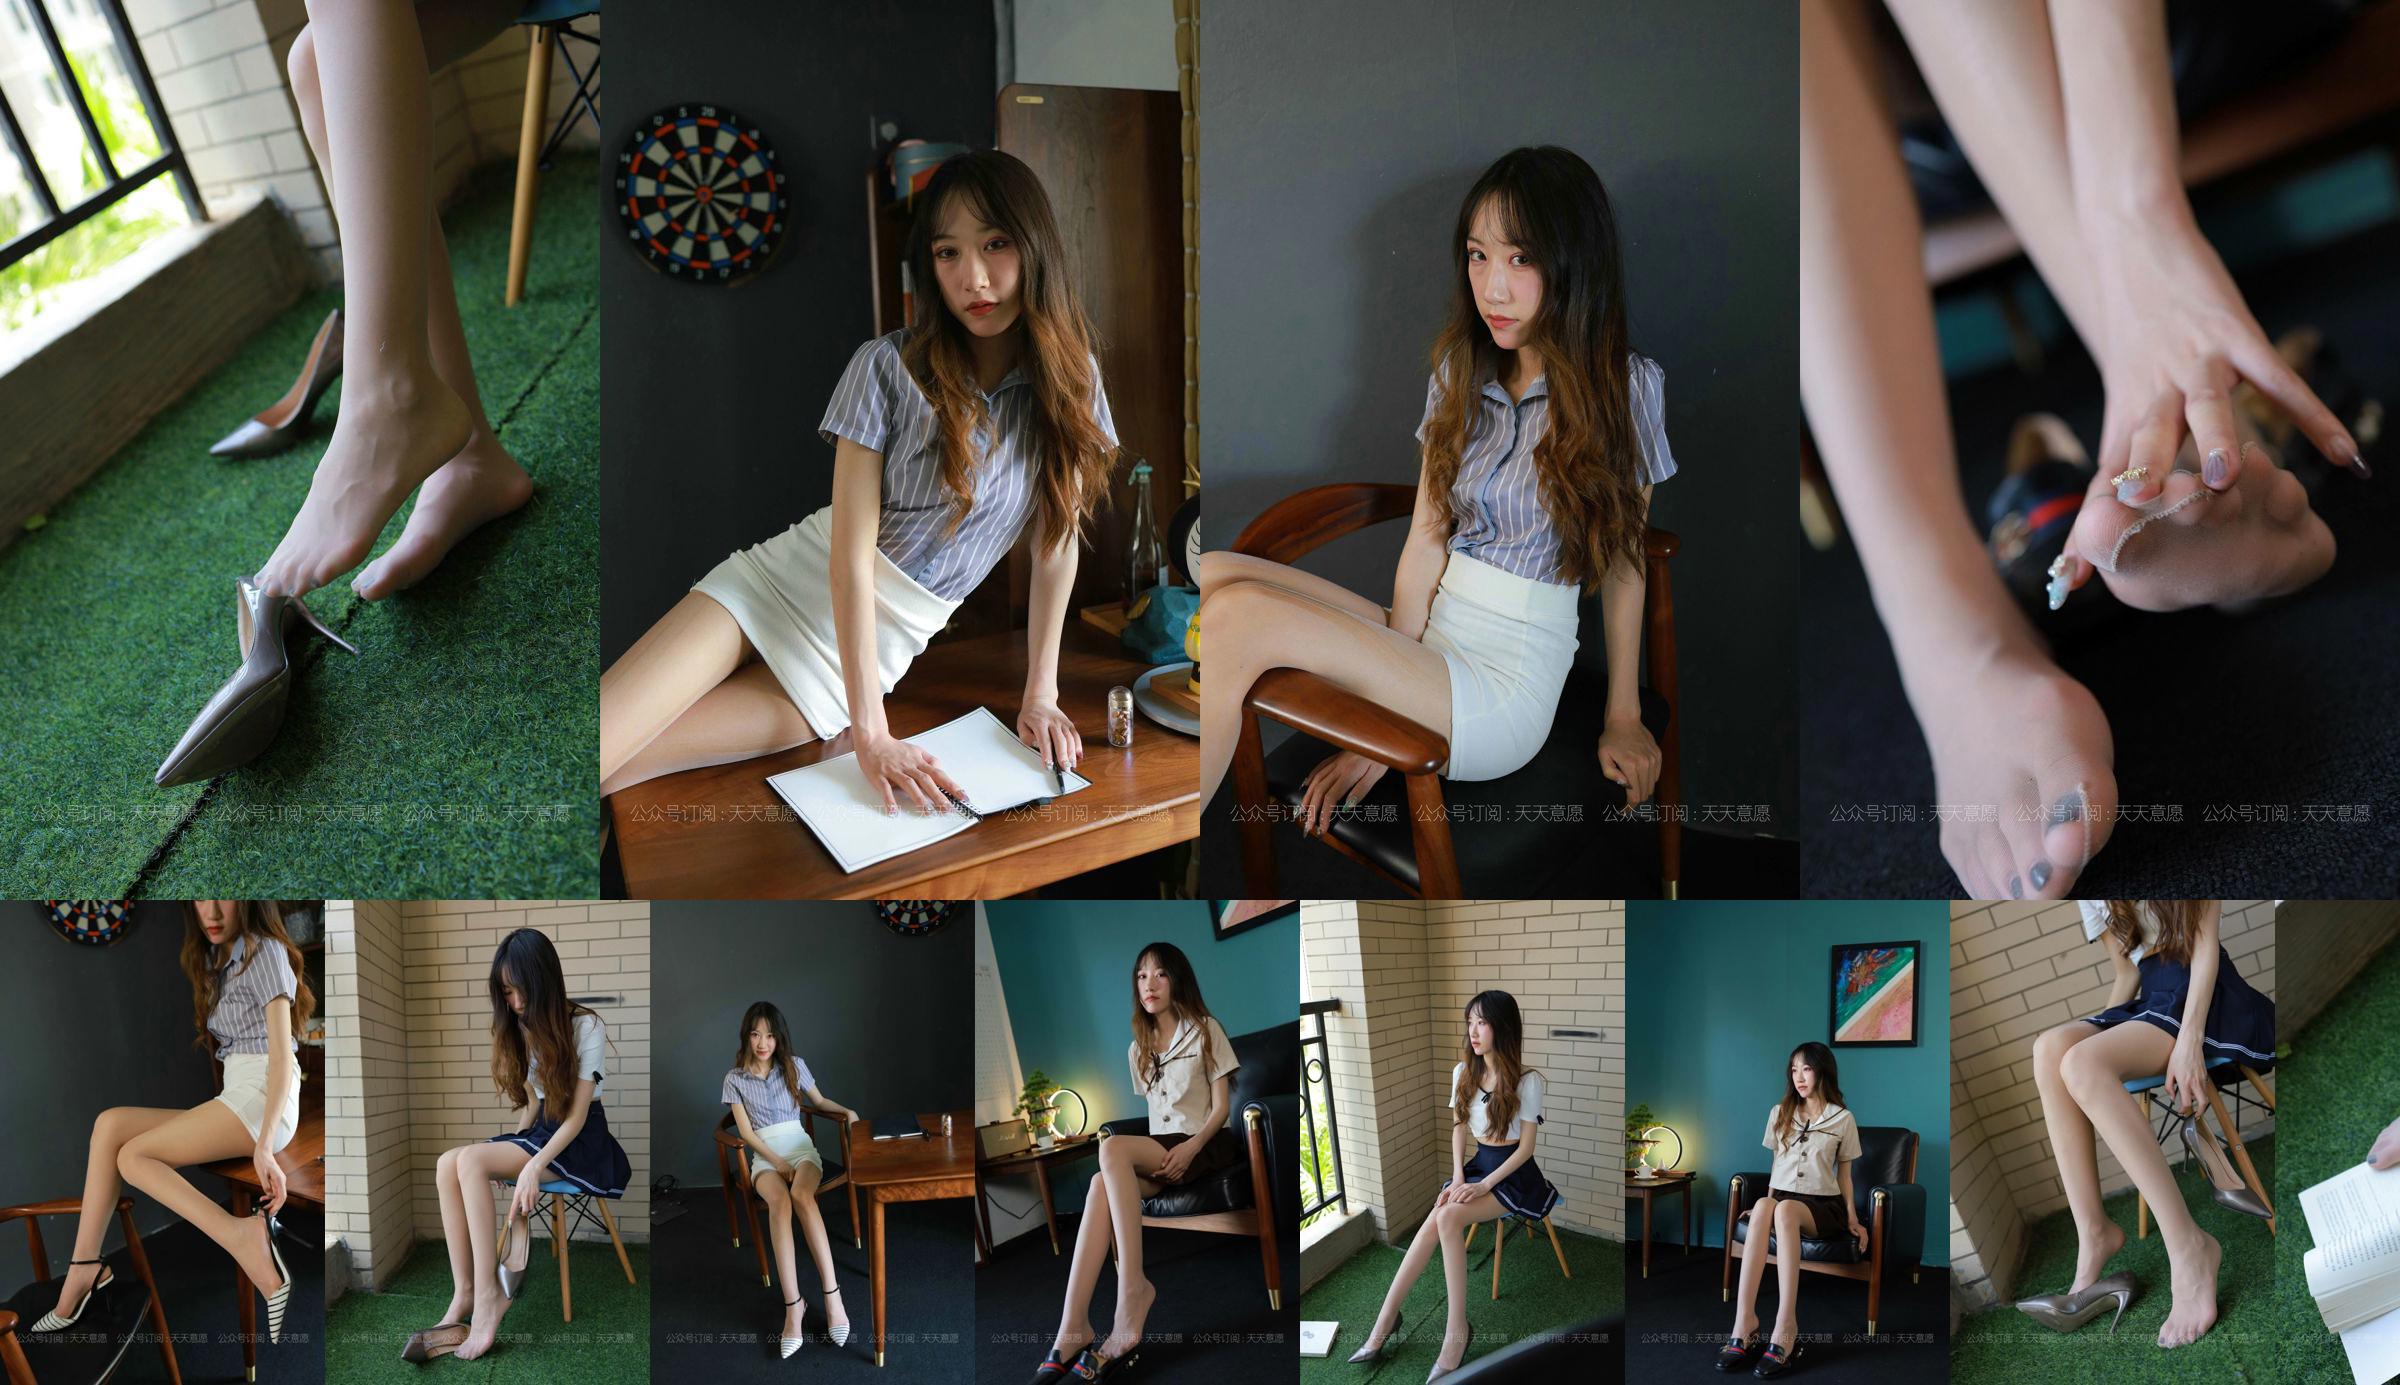 [IESS 奇思趣向] Model: Yiyi "Meisje met lange benen" No.ee6b4d Pagina 17